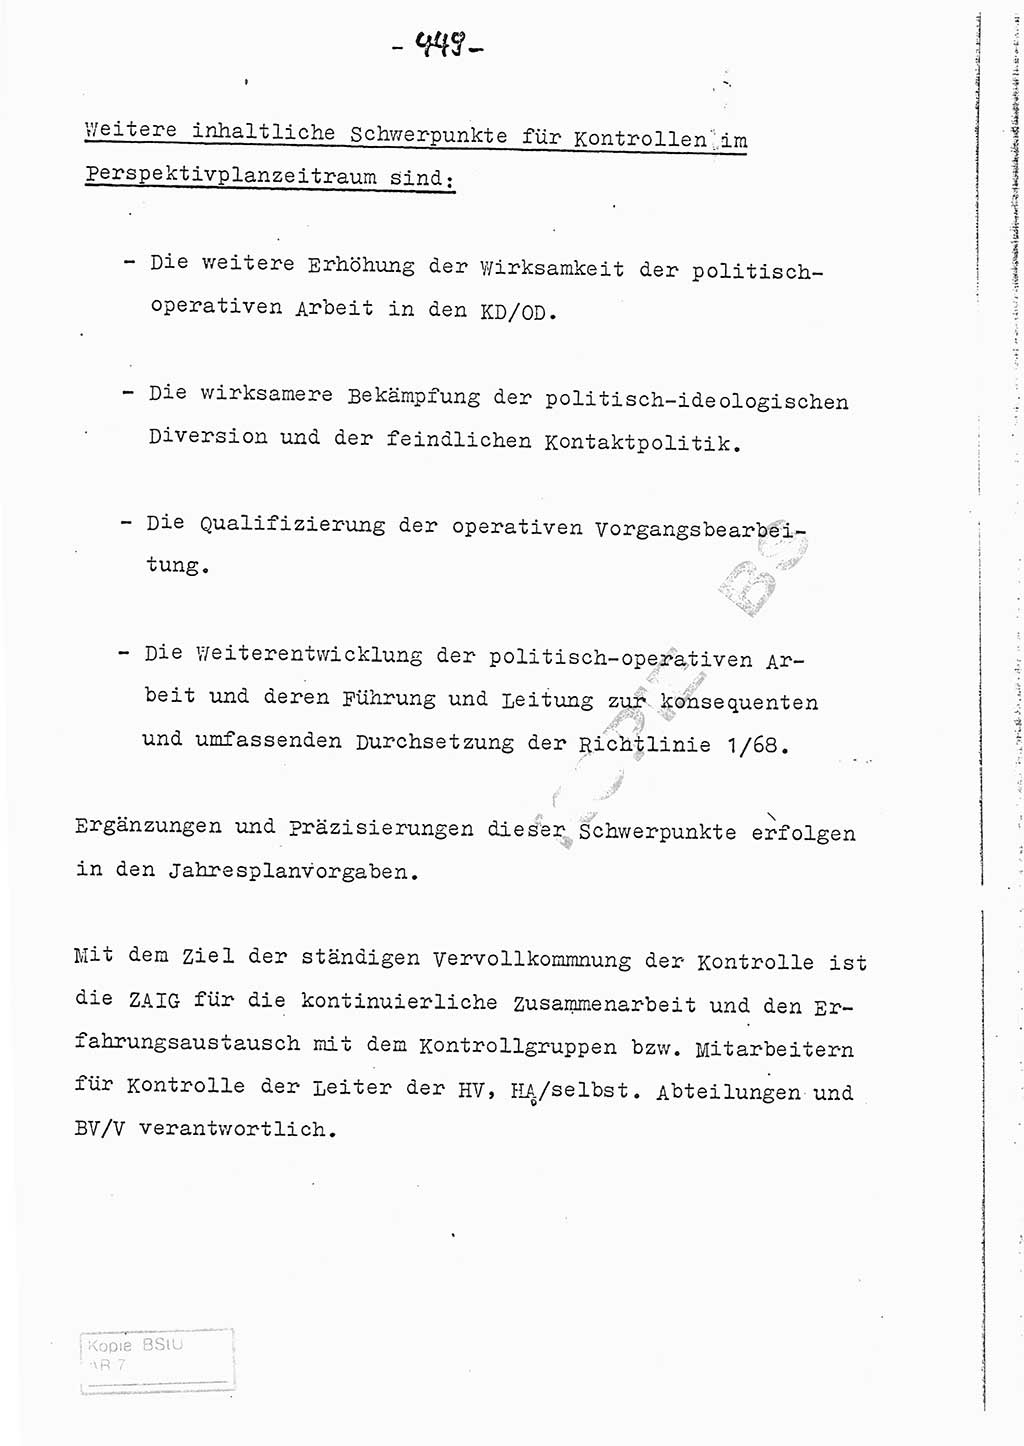 Referat (Entwurf) des Genossen Minister (Generaloberst Erich Mielke) auf der Dienstkonferenz 1972, Ministerium für Staatssicherheit (MfS) [Deutsche Demokratische Republik (DDR)], Der Minister, Geheime Verschlußsache (GVS) 008-150/72, Berlin 25.2.1972, Seite 449 (Ref. Entw. DK MfS DDR Min. GVS 008-150/72 1972, S. 449)